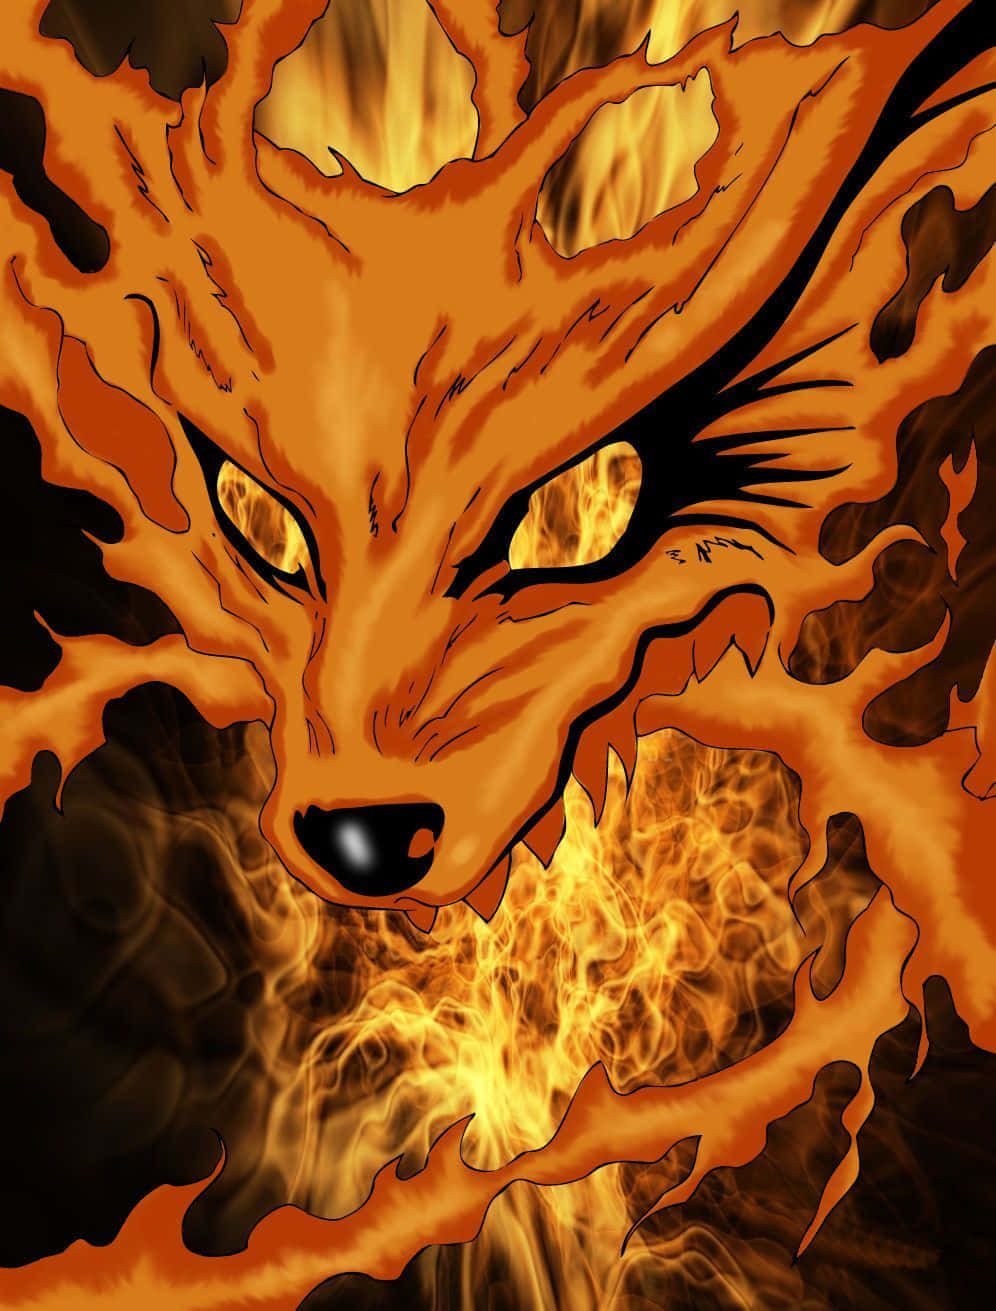 A mythical Nine-Tailed Fox lurks in the shadows